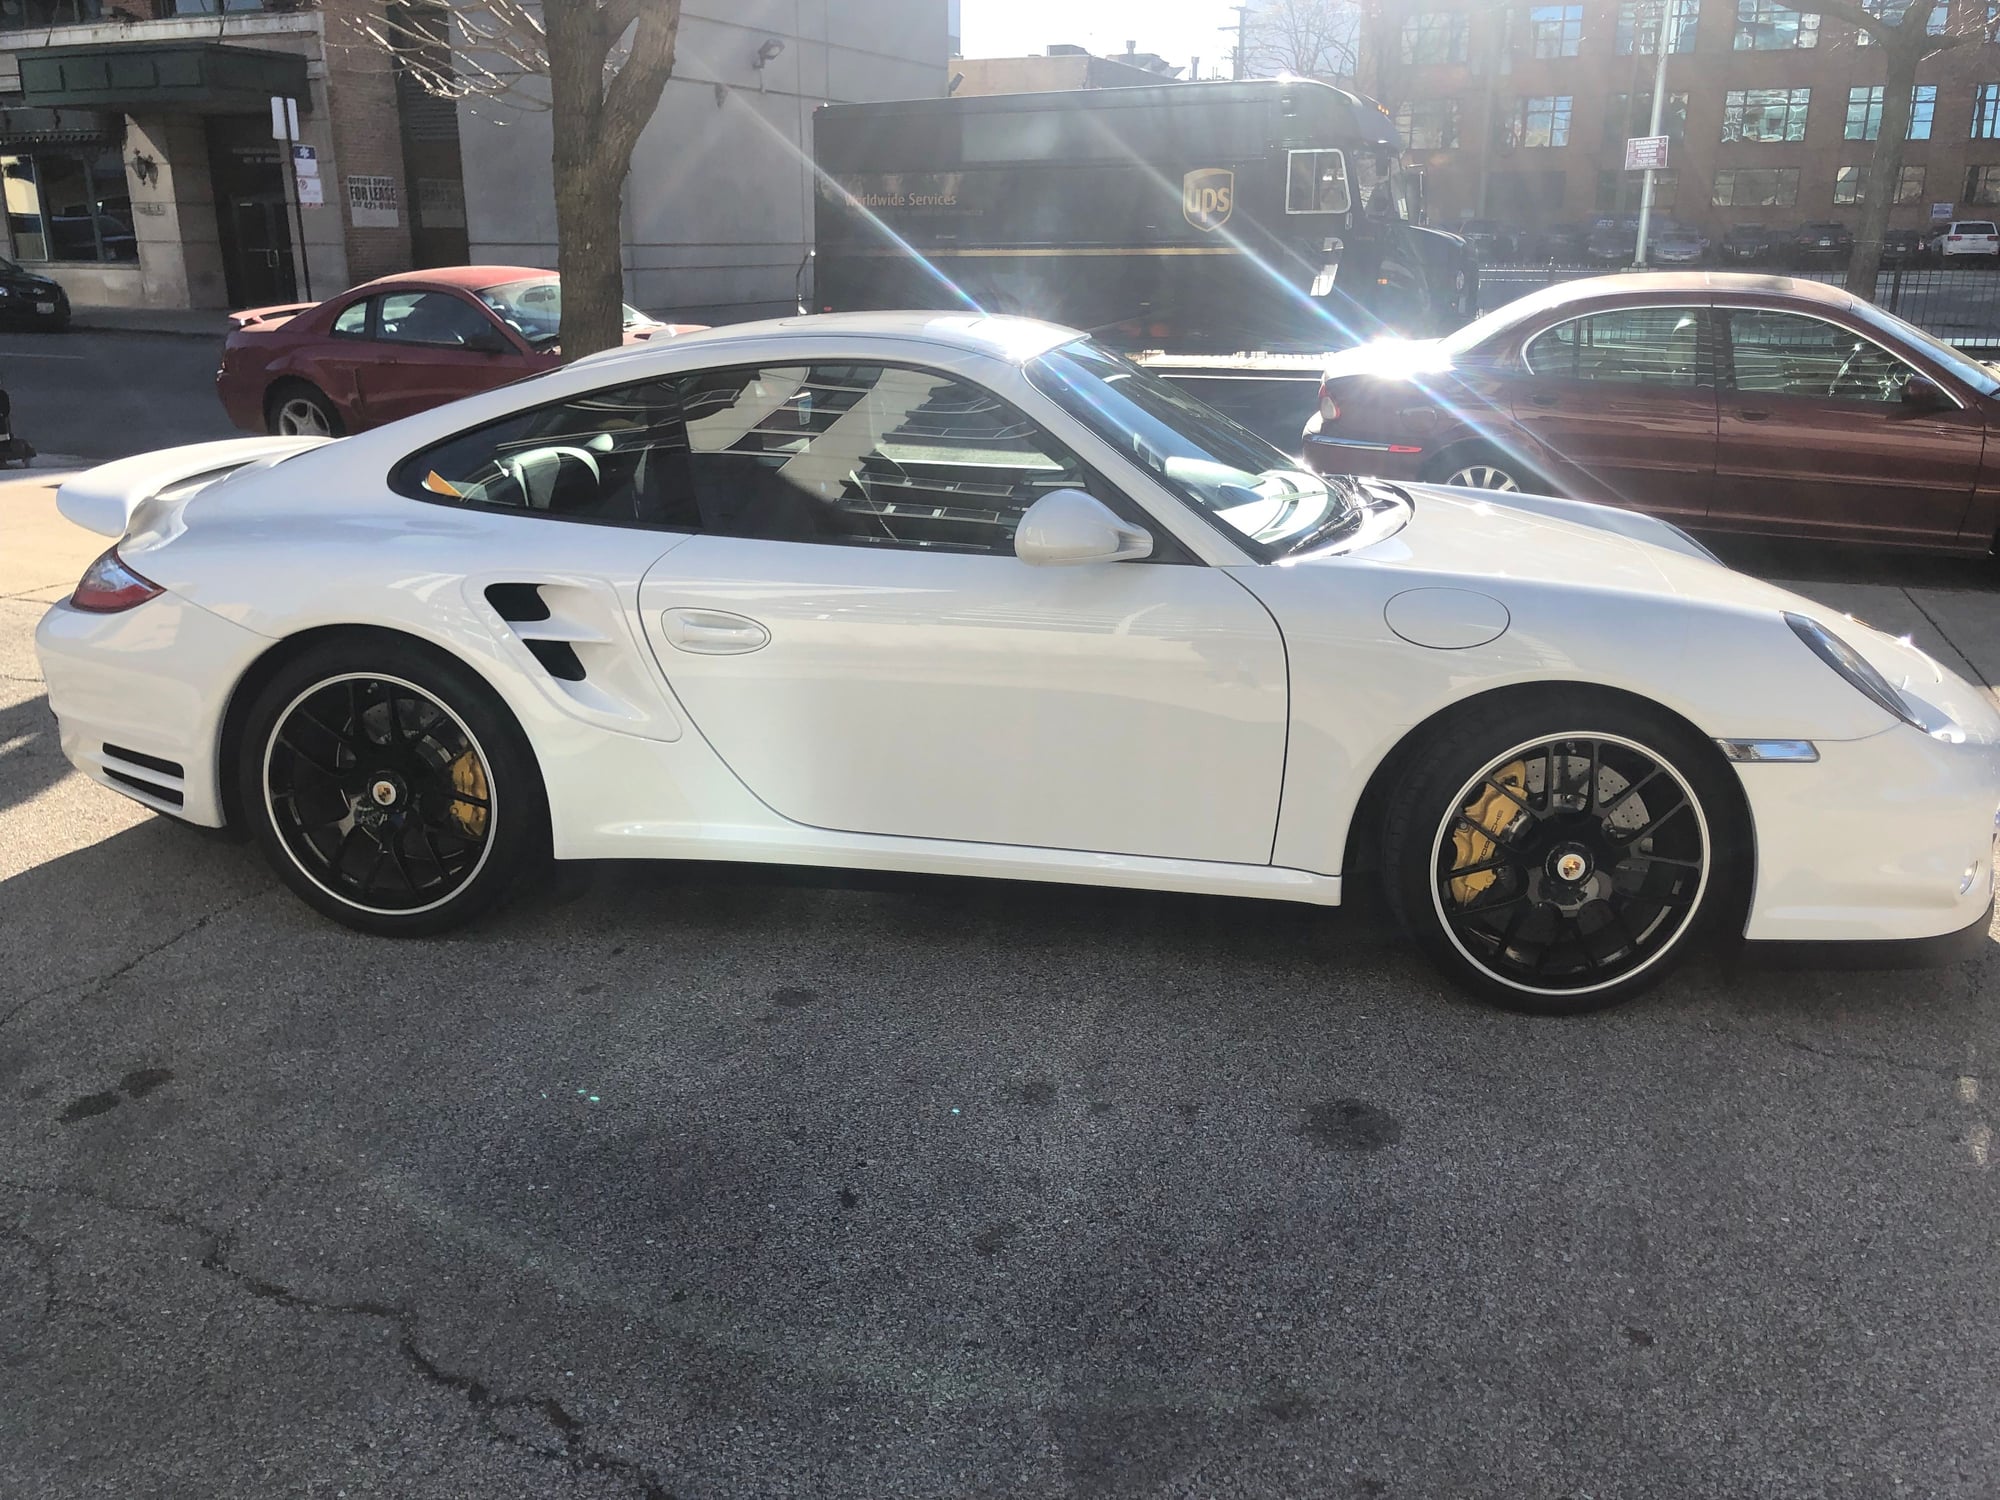 2012 Porsche 911 - 2012 Porsche 911 Turbo S - Carrara White on Black(w/ deviated stitch) -- STOCK - Used - VIN WP0AD2A92CS766600 - 19,500 Miles - 6 cyl - 4WD - Coupe - White - Chicago, IL 60607, United States